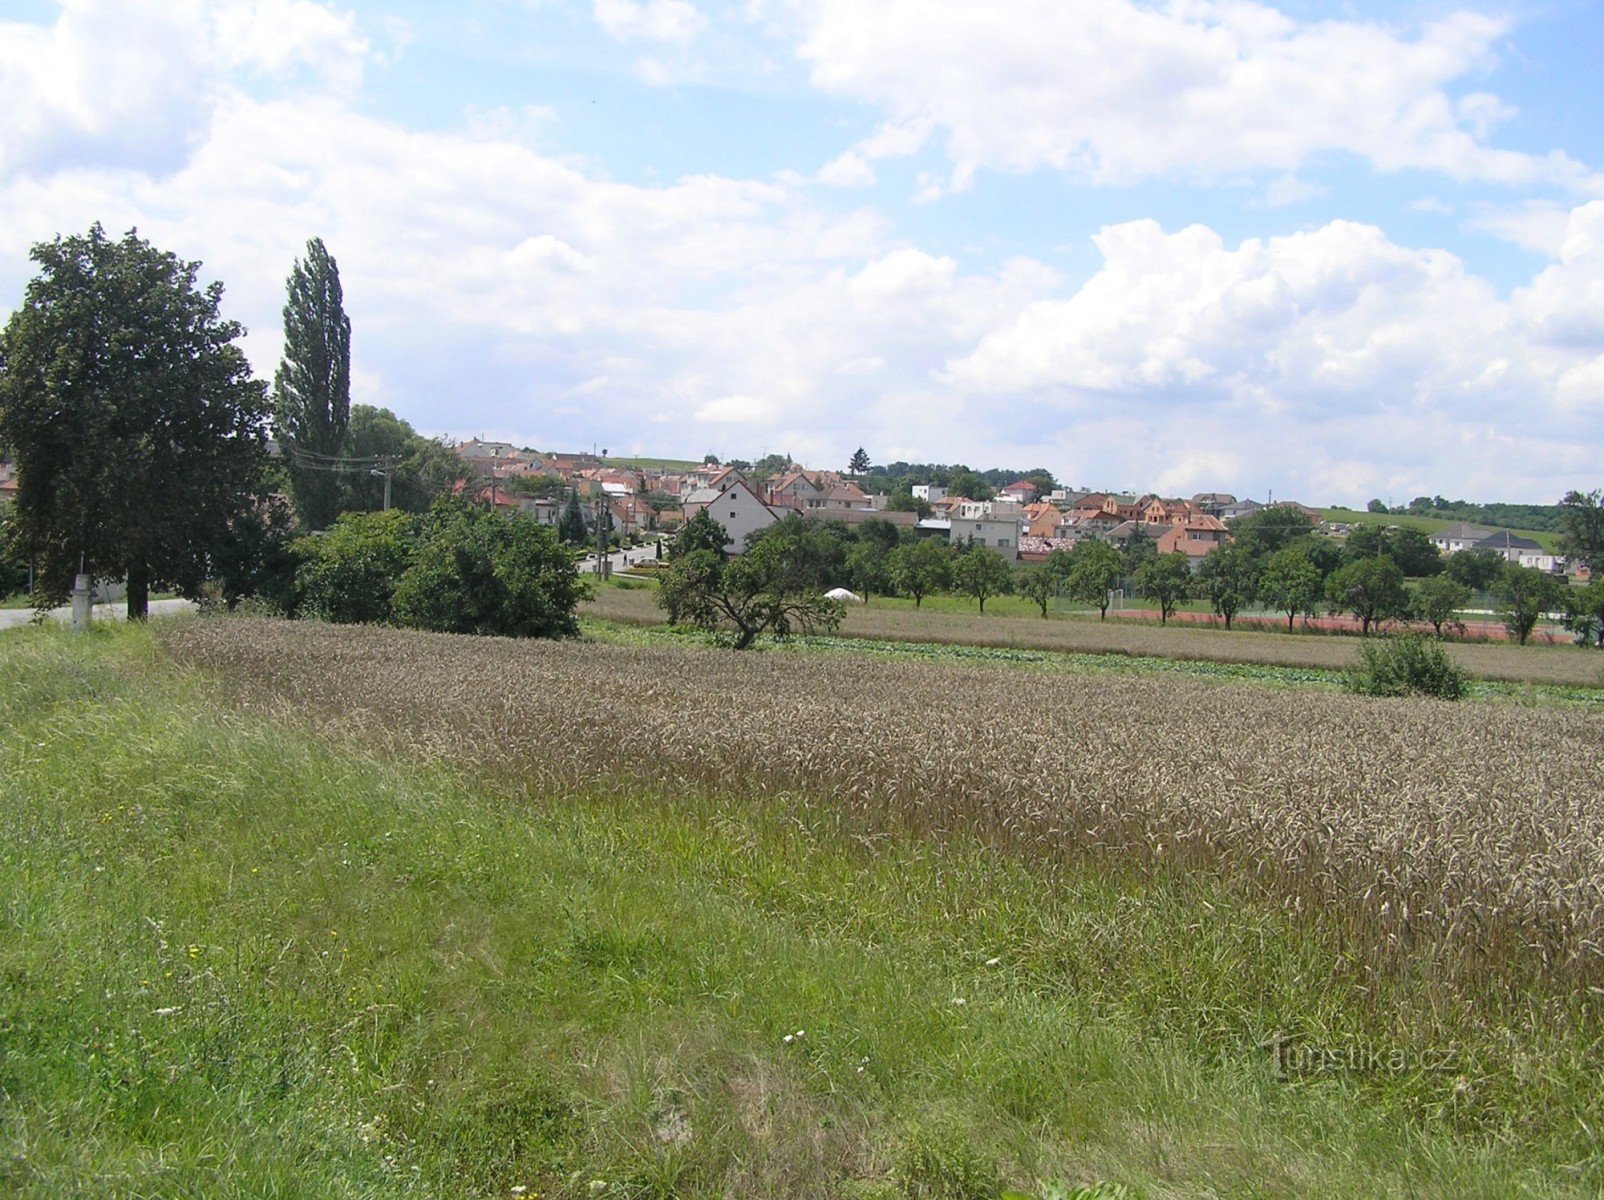 Únanov aan de overkant van Výrovice (augustus 2006)